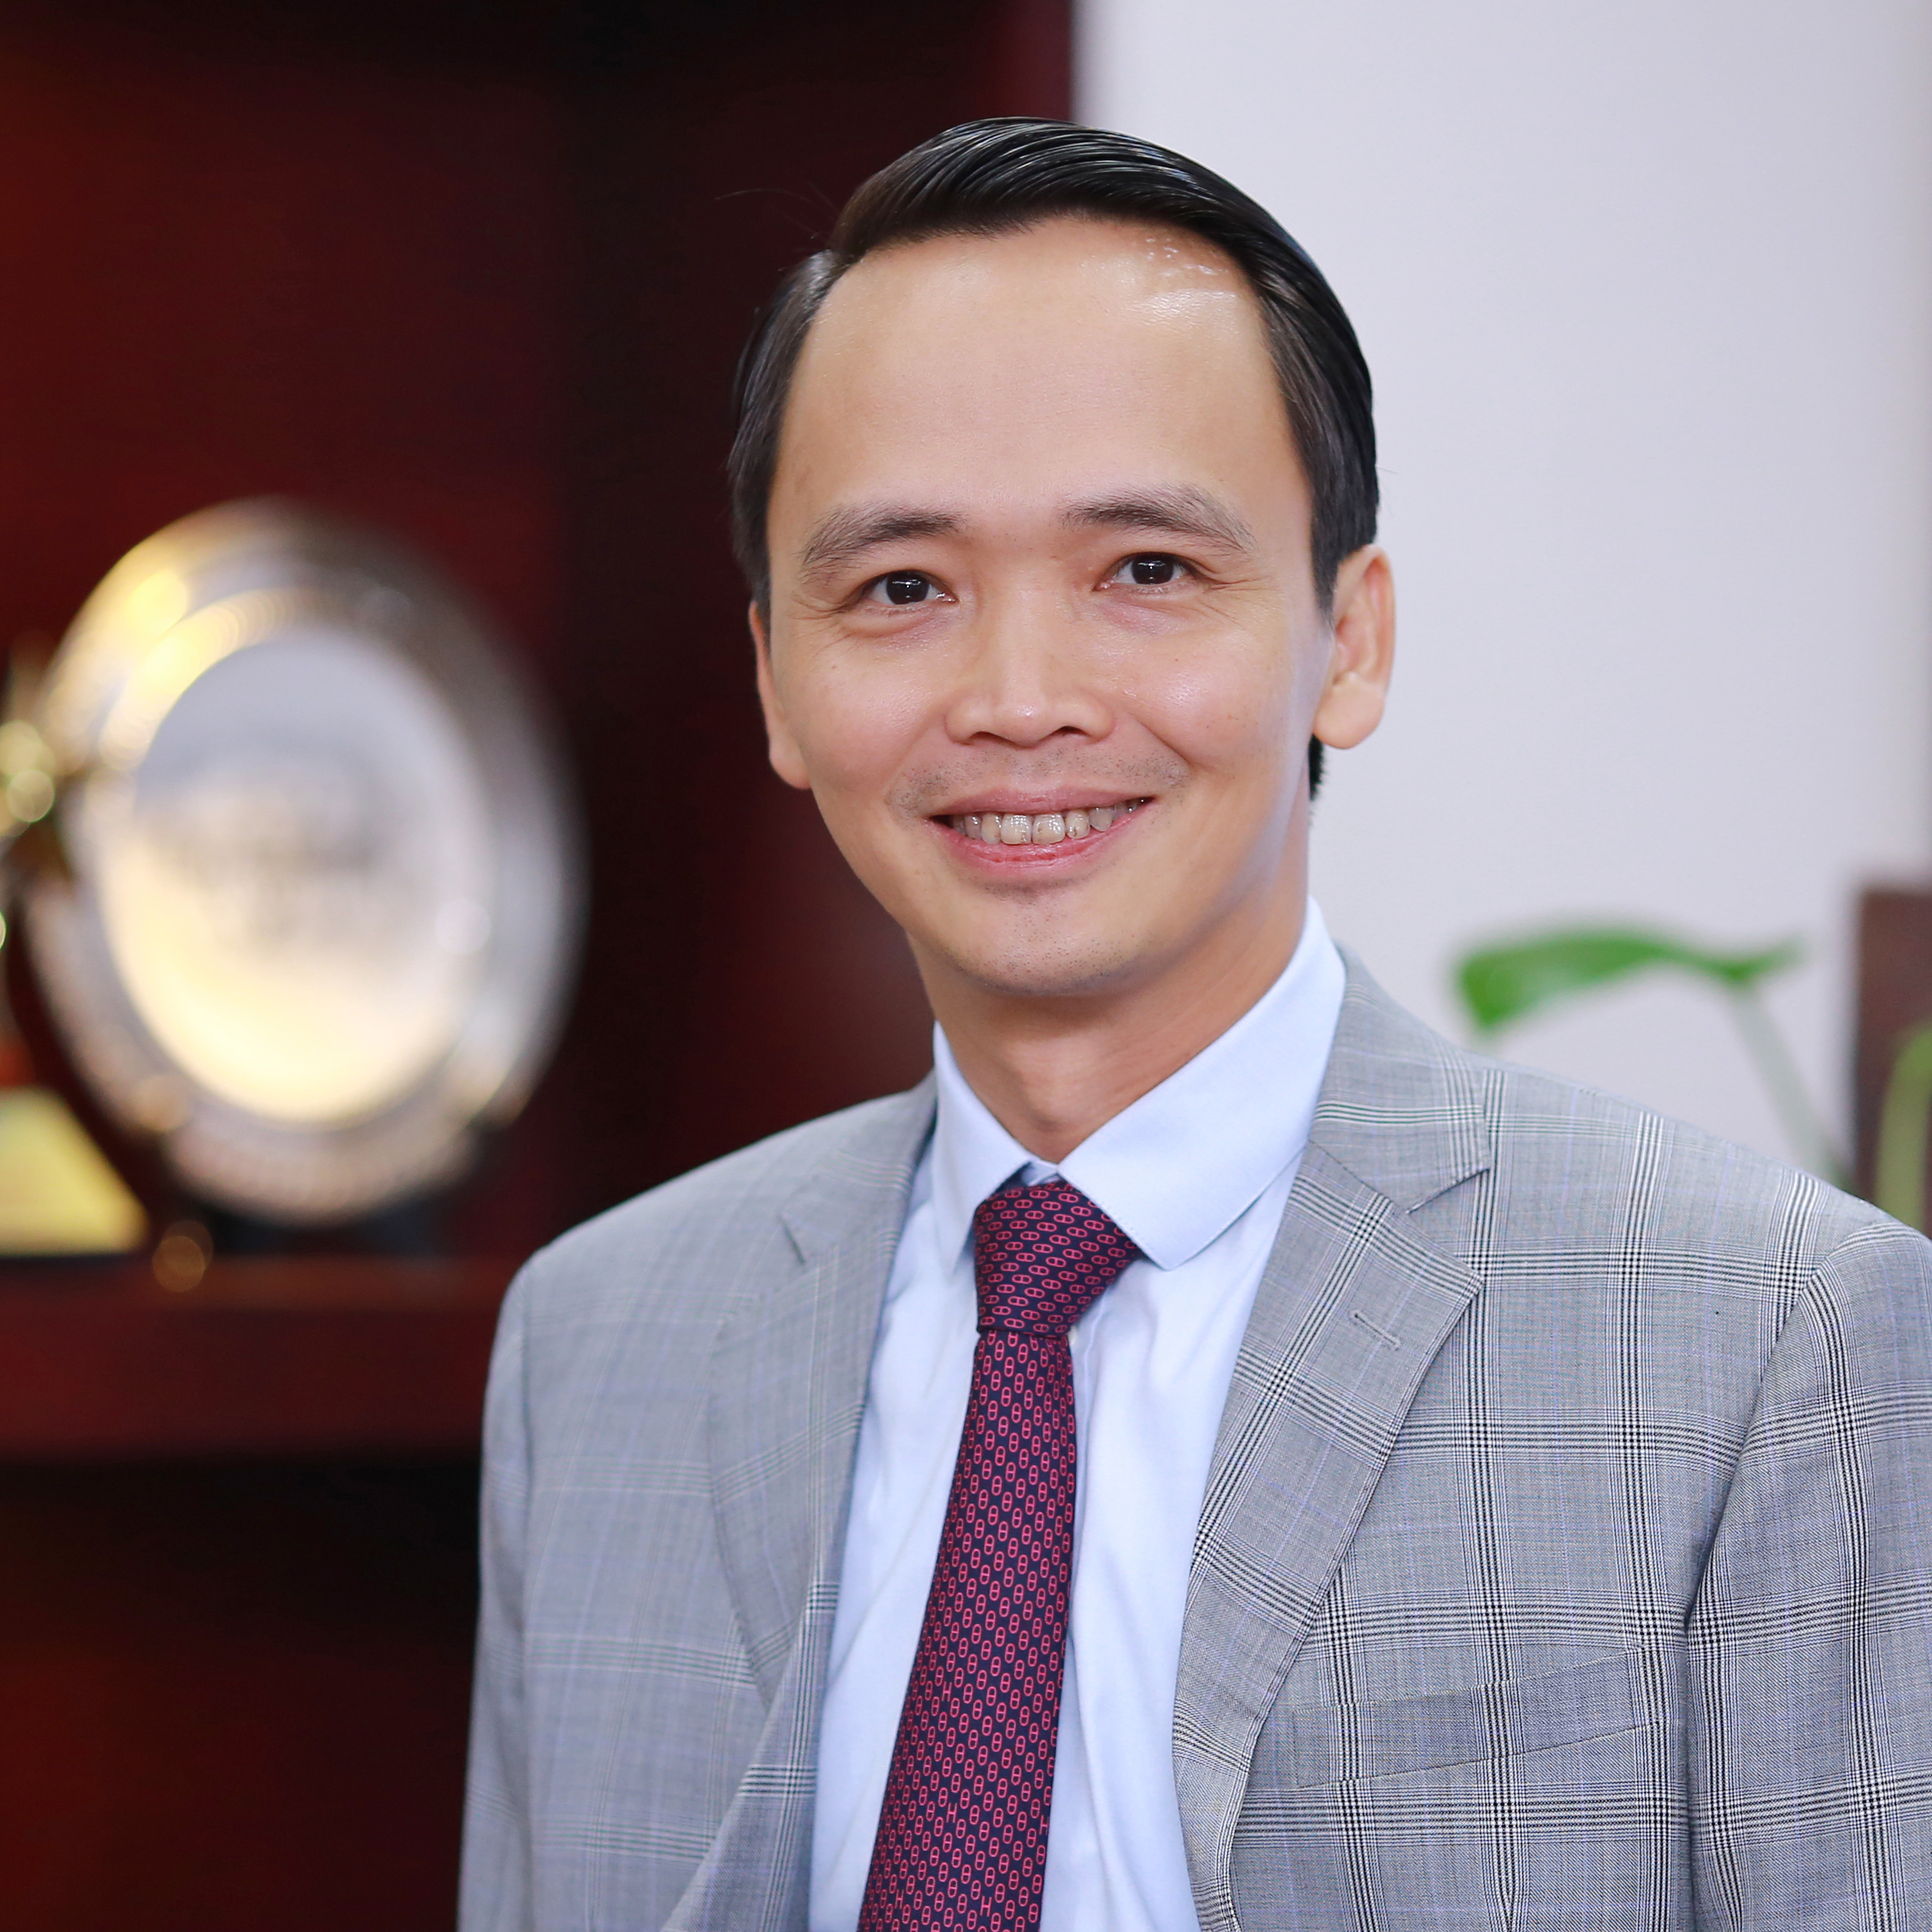 Thông báo về kế hoạch mua tiếp 20 triệu cổ phiếu FLC của ông Trịnh Văn Quyết- chủ tịch HĐQT công ty cổ phần tập đoàn FLC